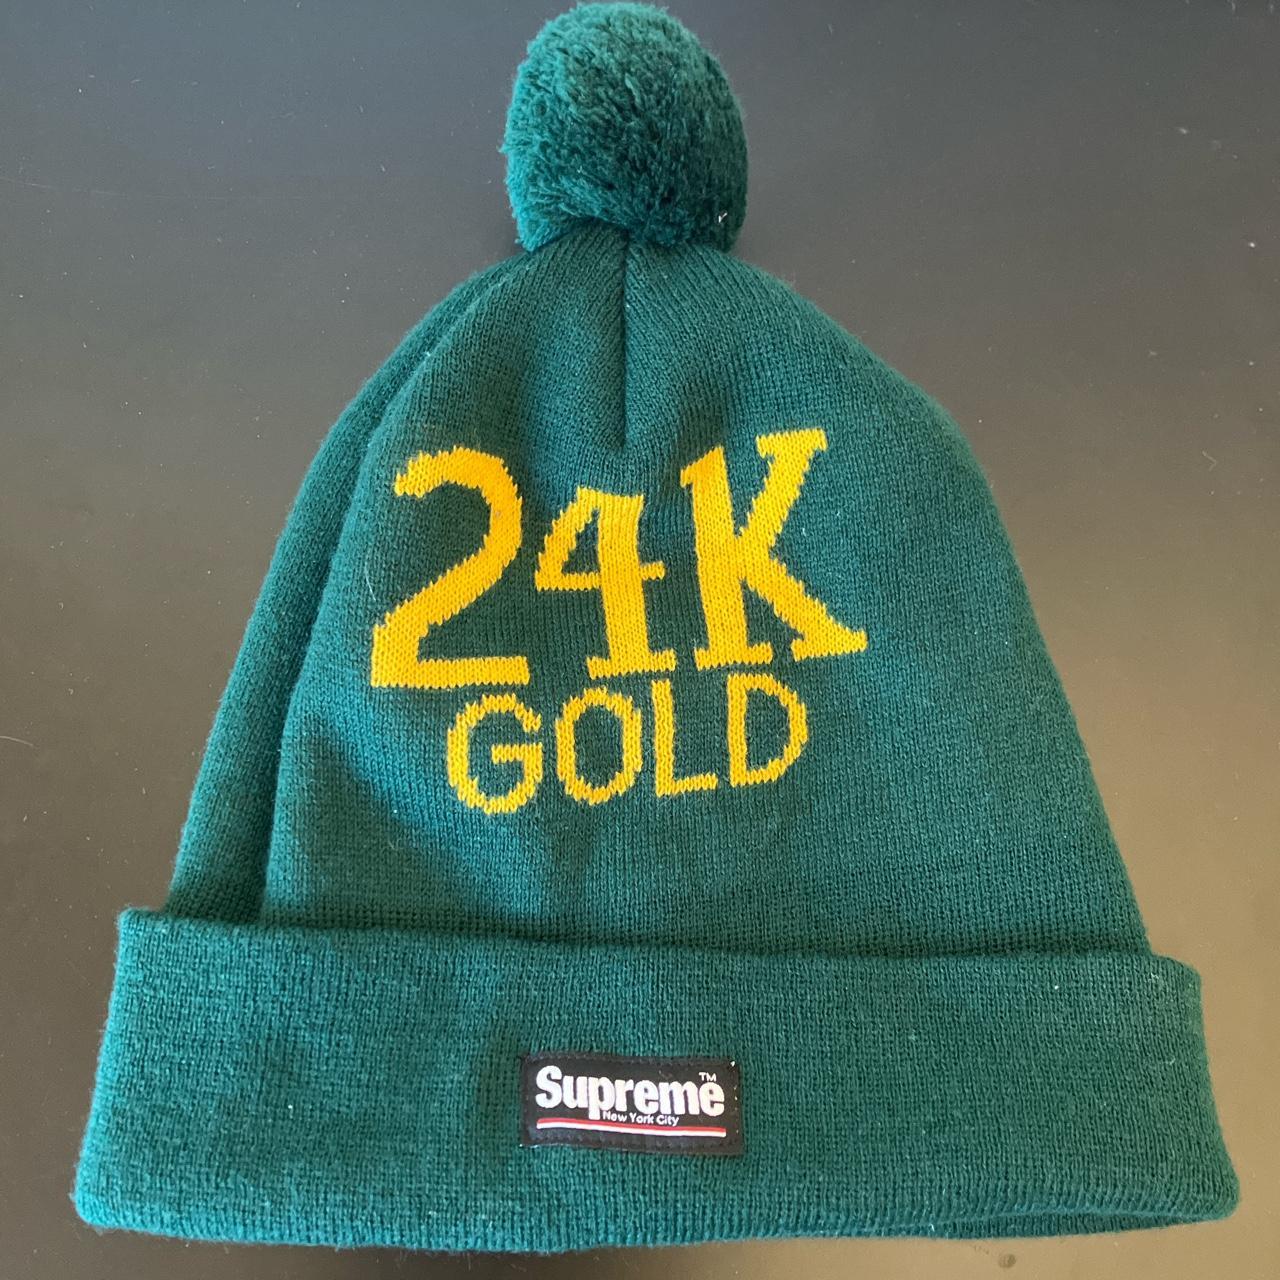 Supreme 24K Gold Beanie Gold